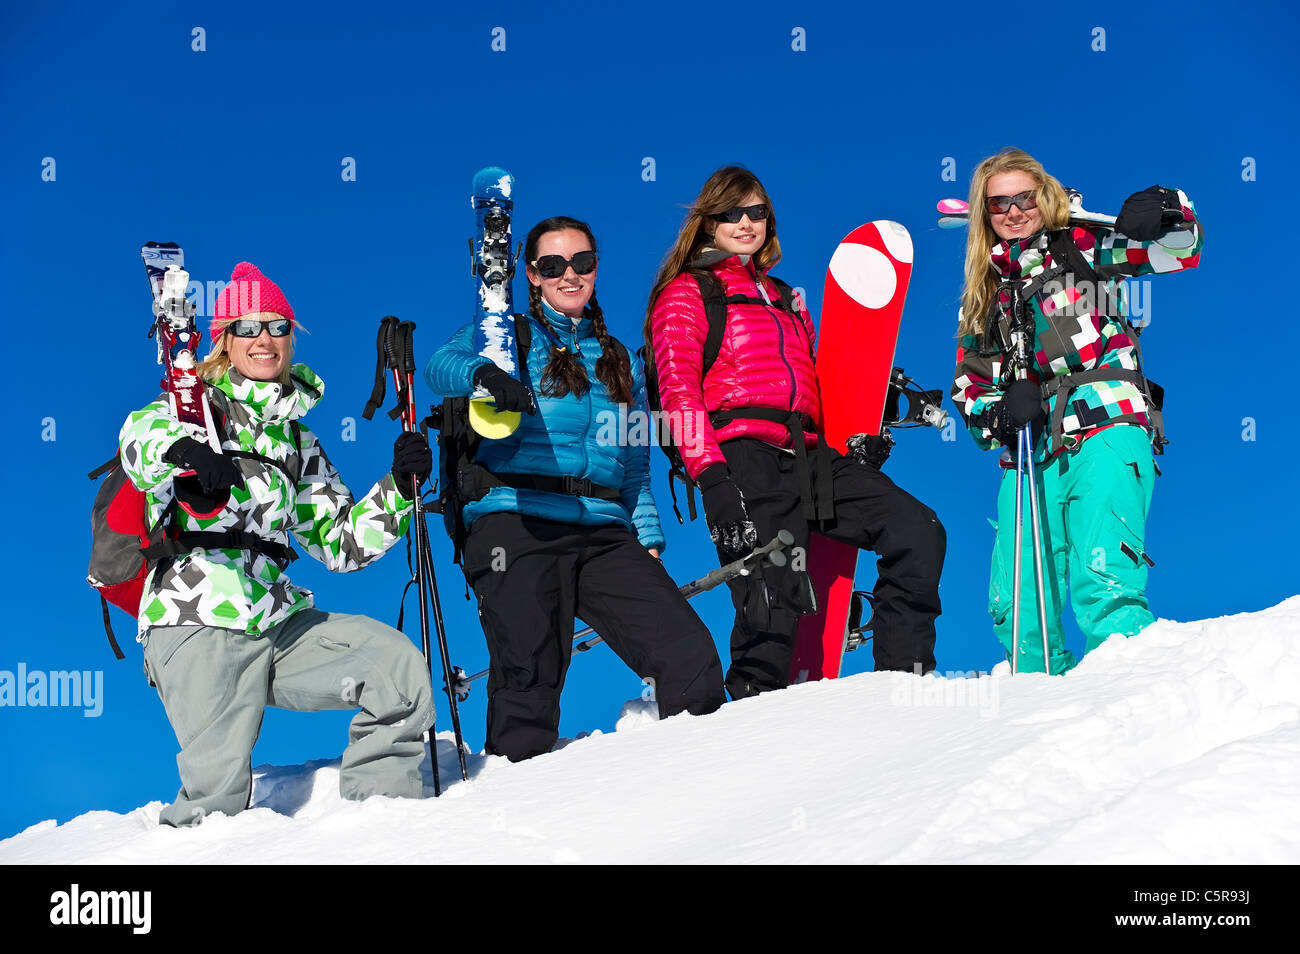 Cuatro amigos en una vacaciones de esquí y snowboard para divertirse. Foto de stock